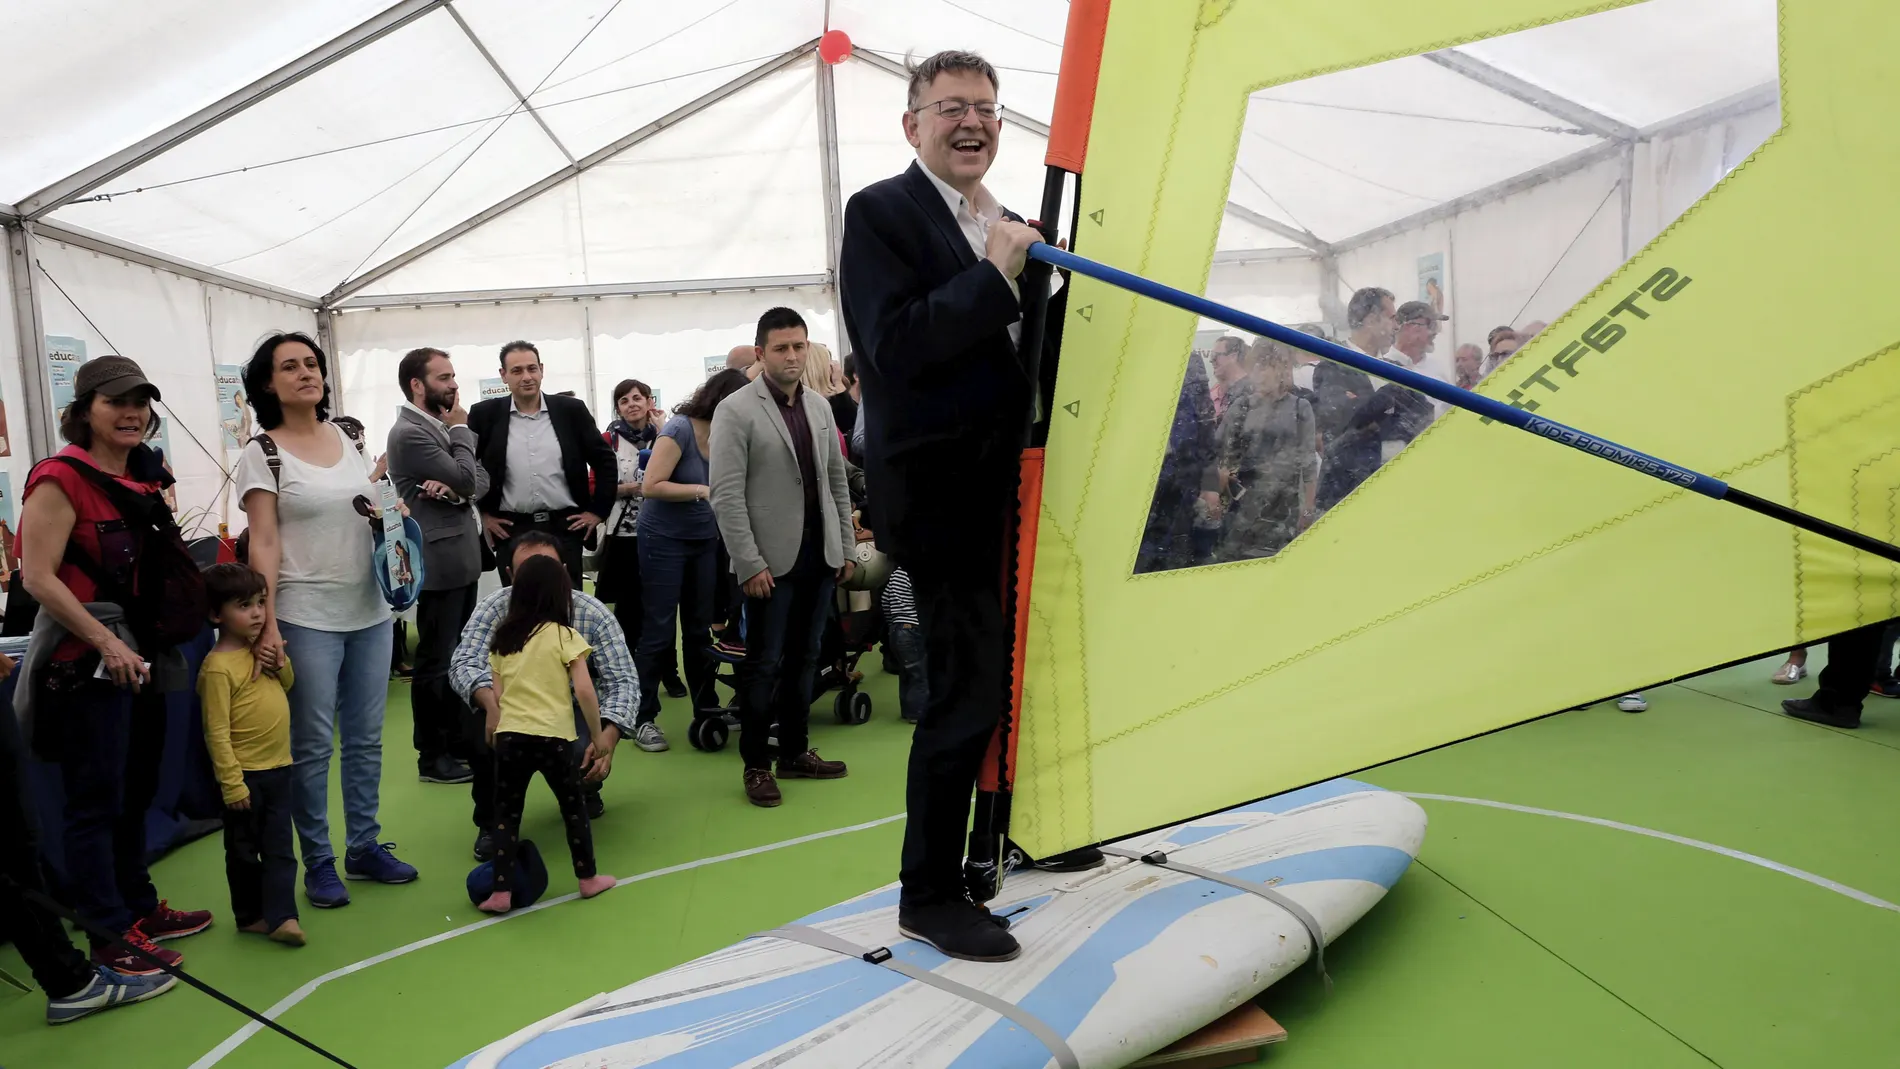 El president de la Generalitat valenciana, Ximo Puig, subido a una tabla de windsurf en el encuentro 'Primavera Educativa'